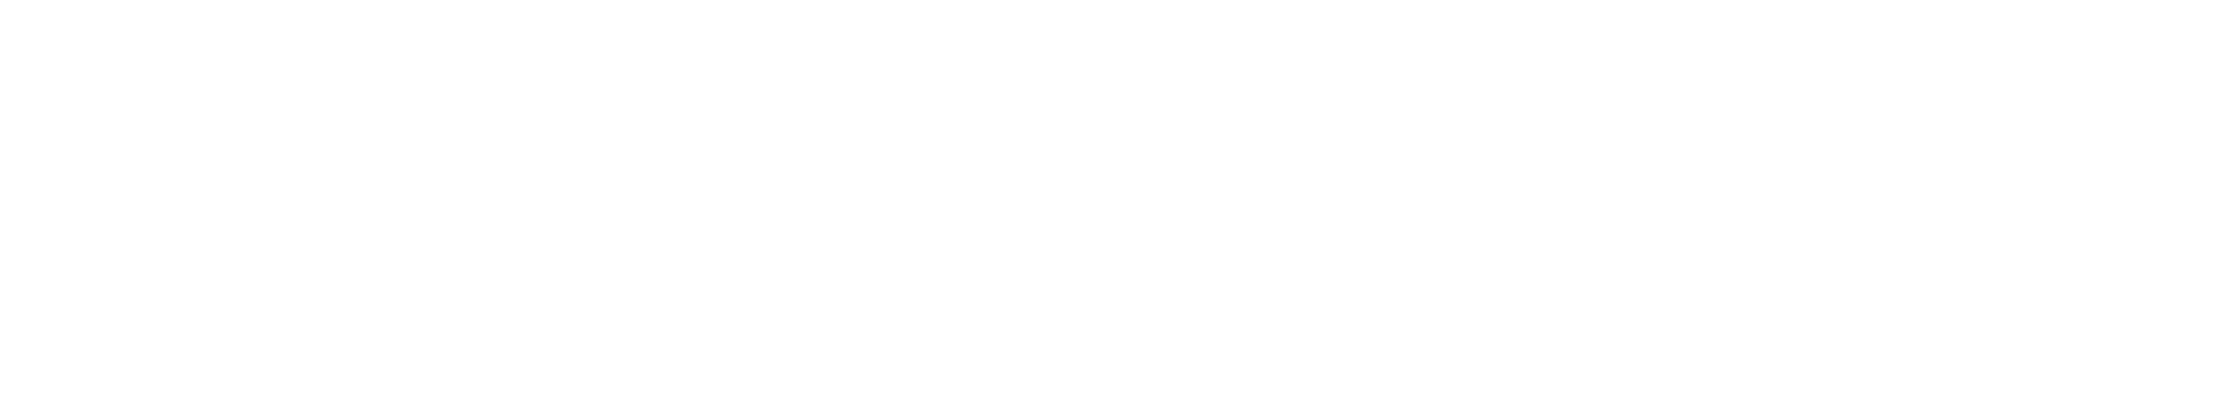 Shopify, Amazon, and Alibaba